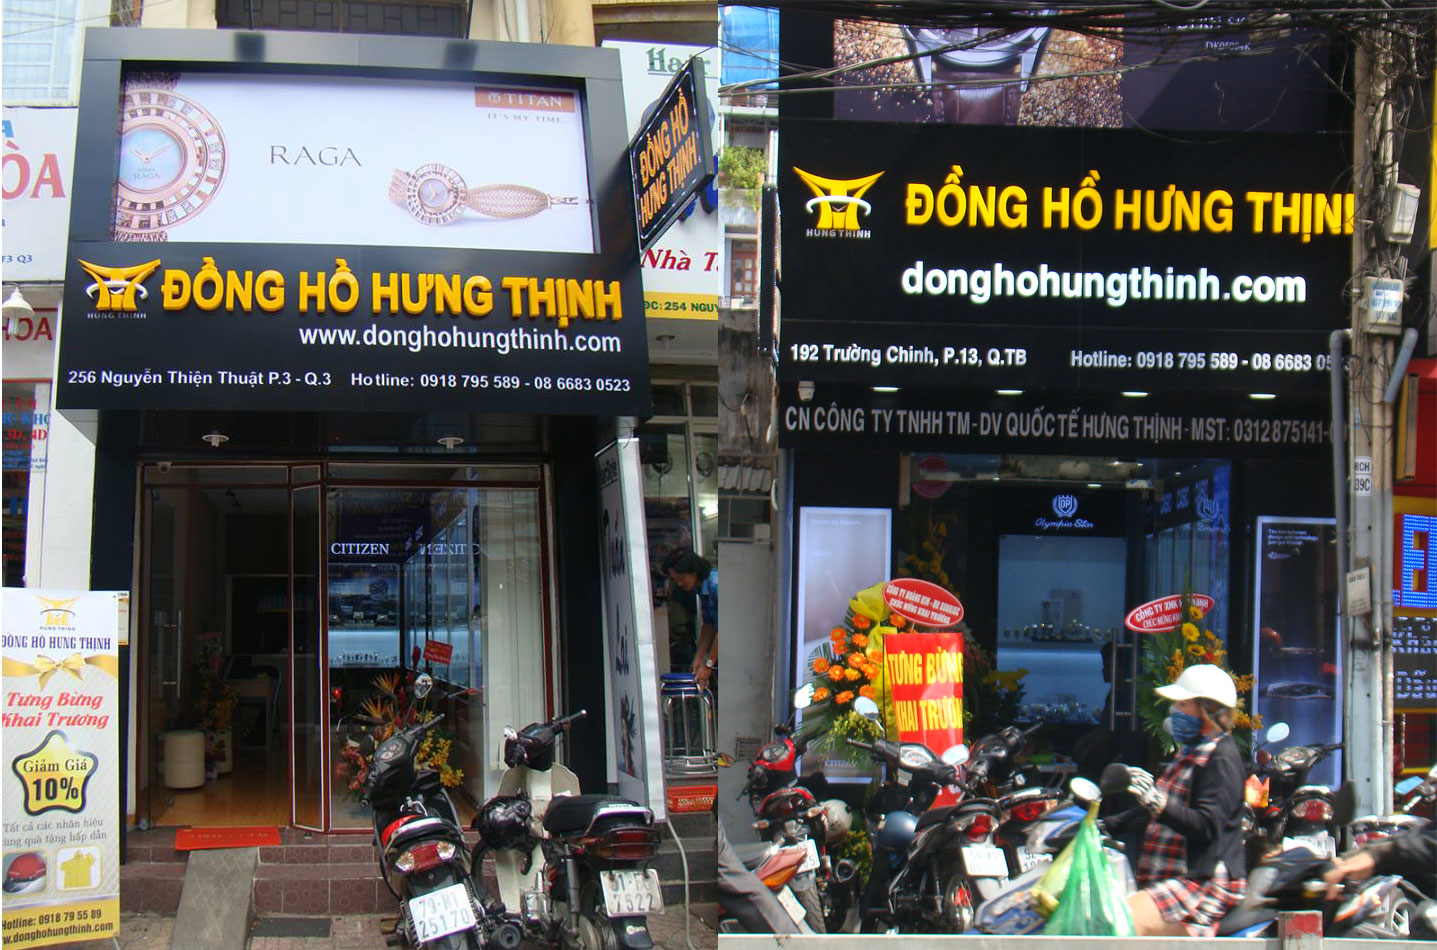 Shop đồng hồ Hưng Thịnh